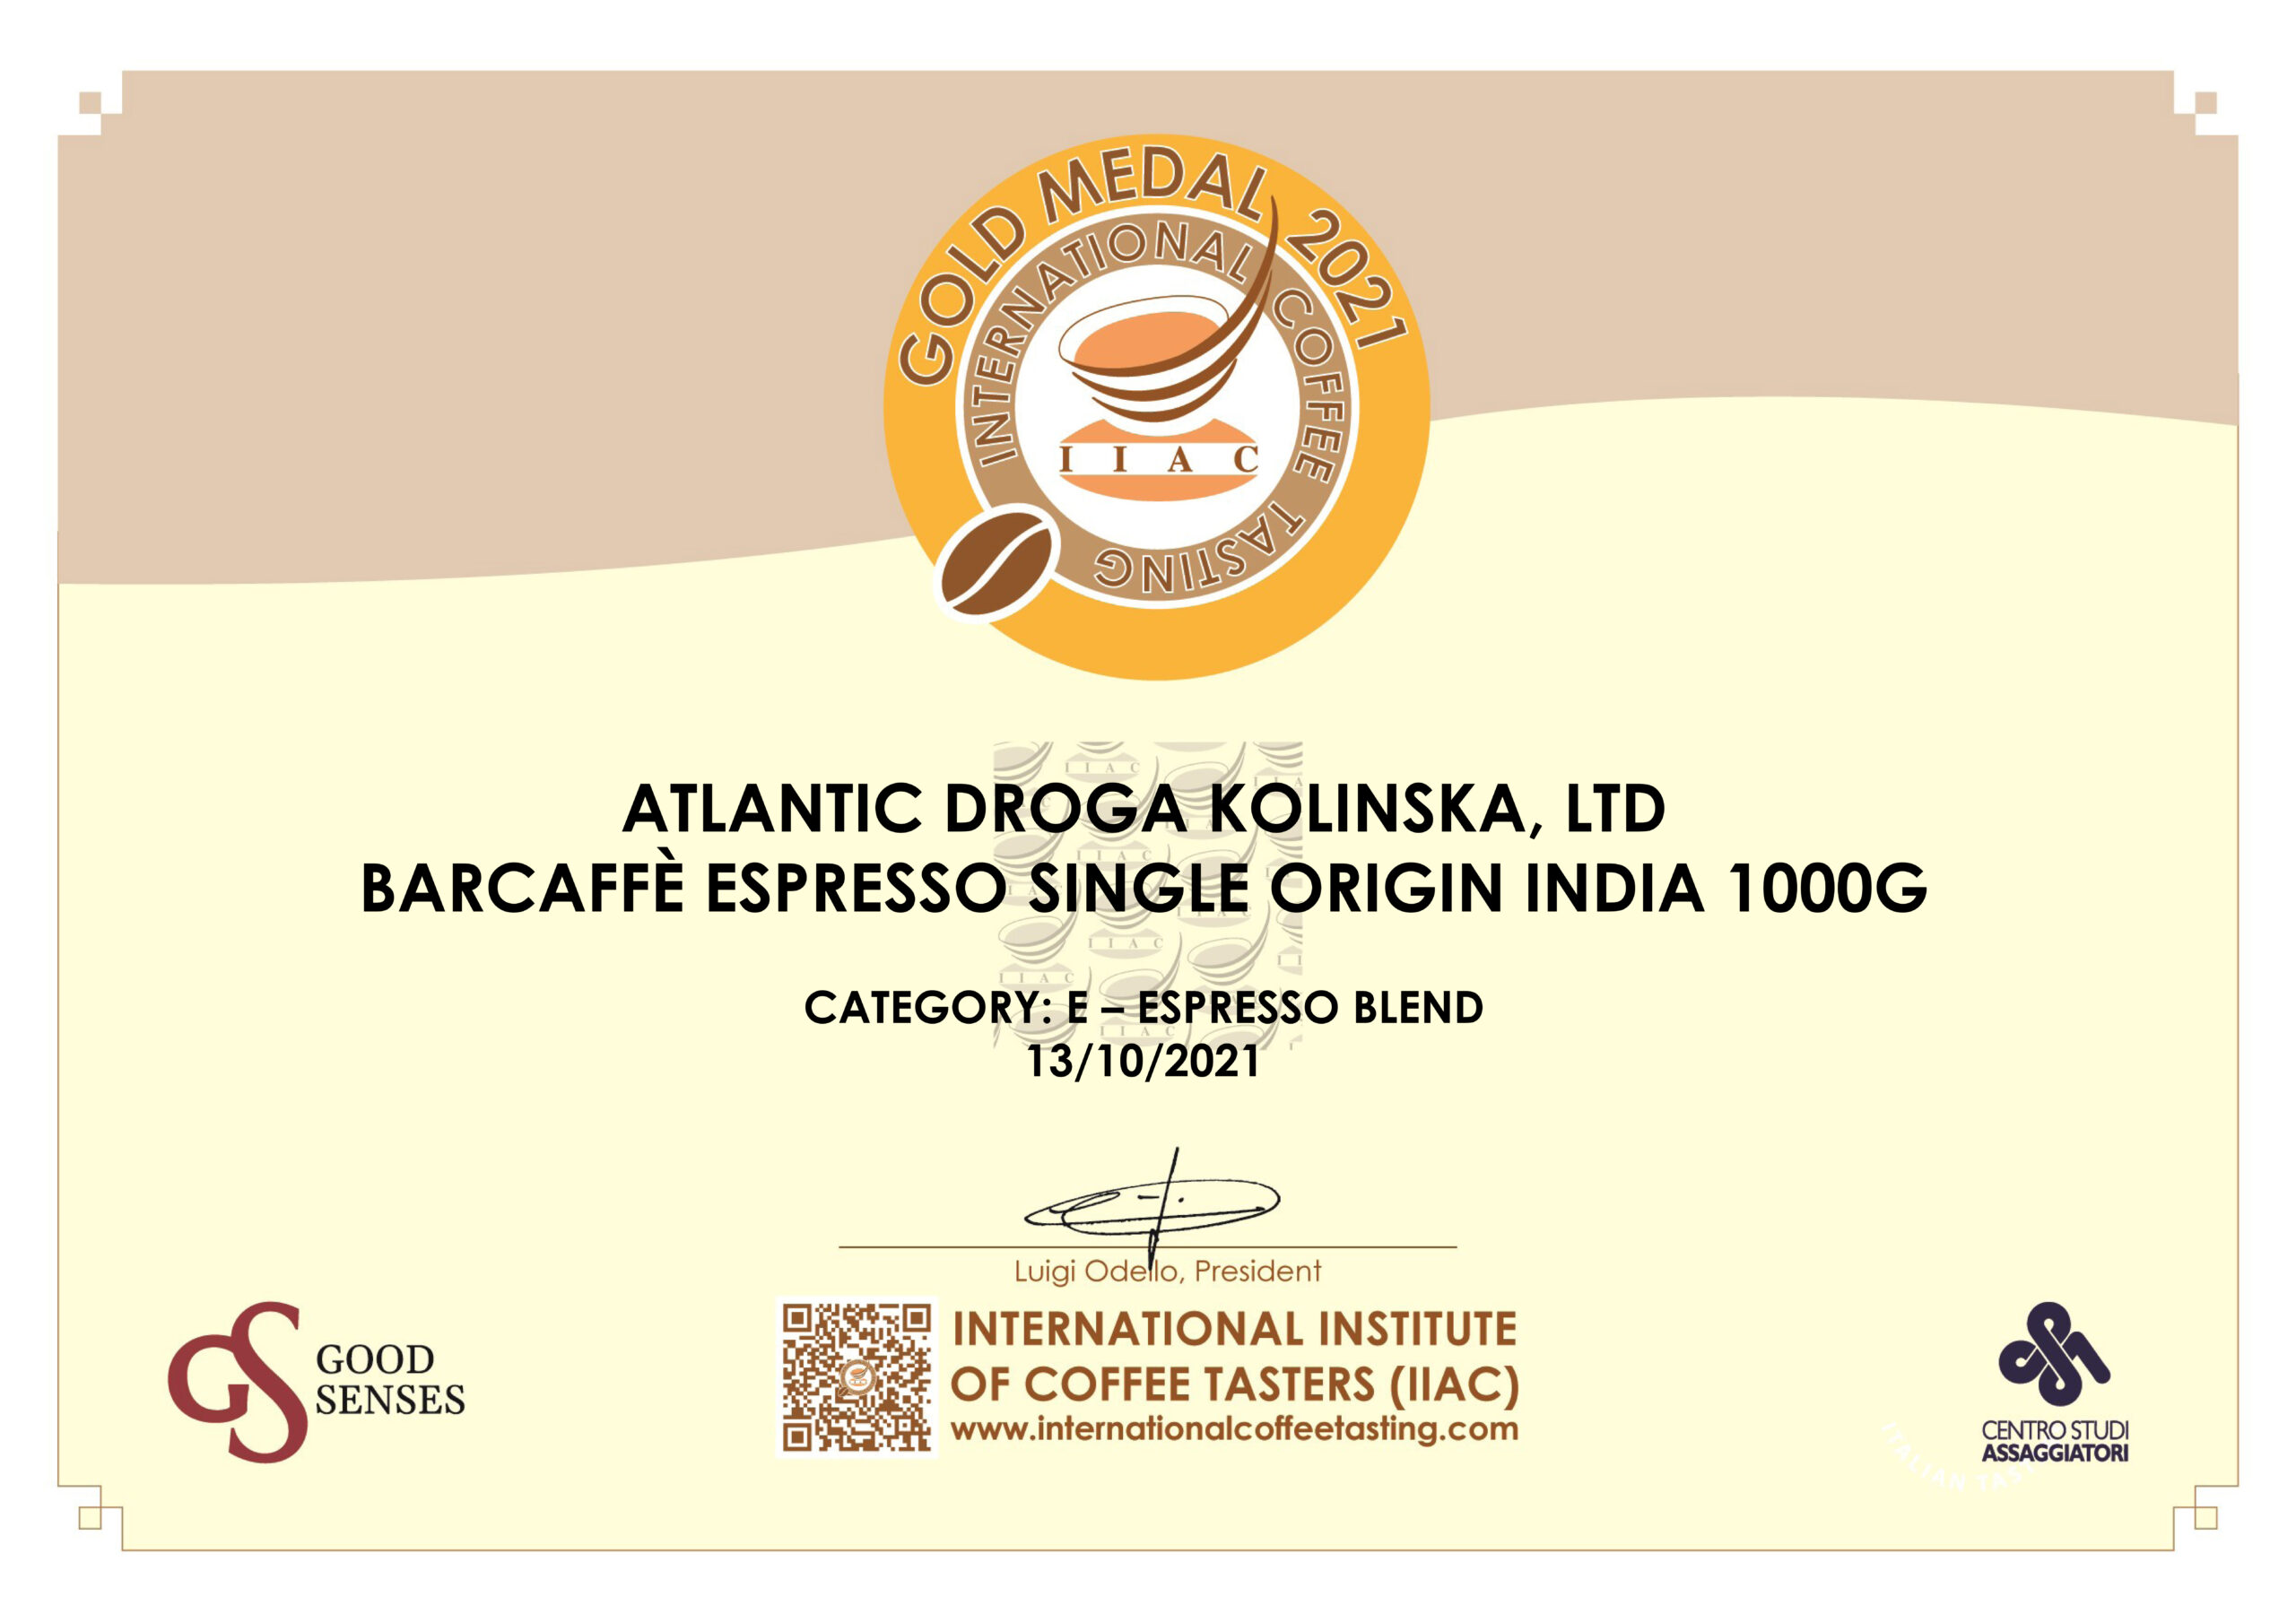 Nova zlatna medalja za Barcaffé espresso